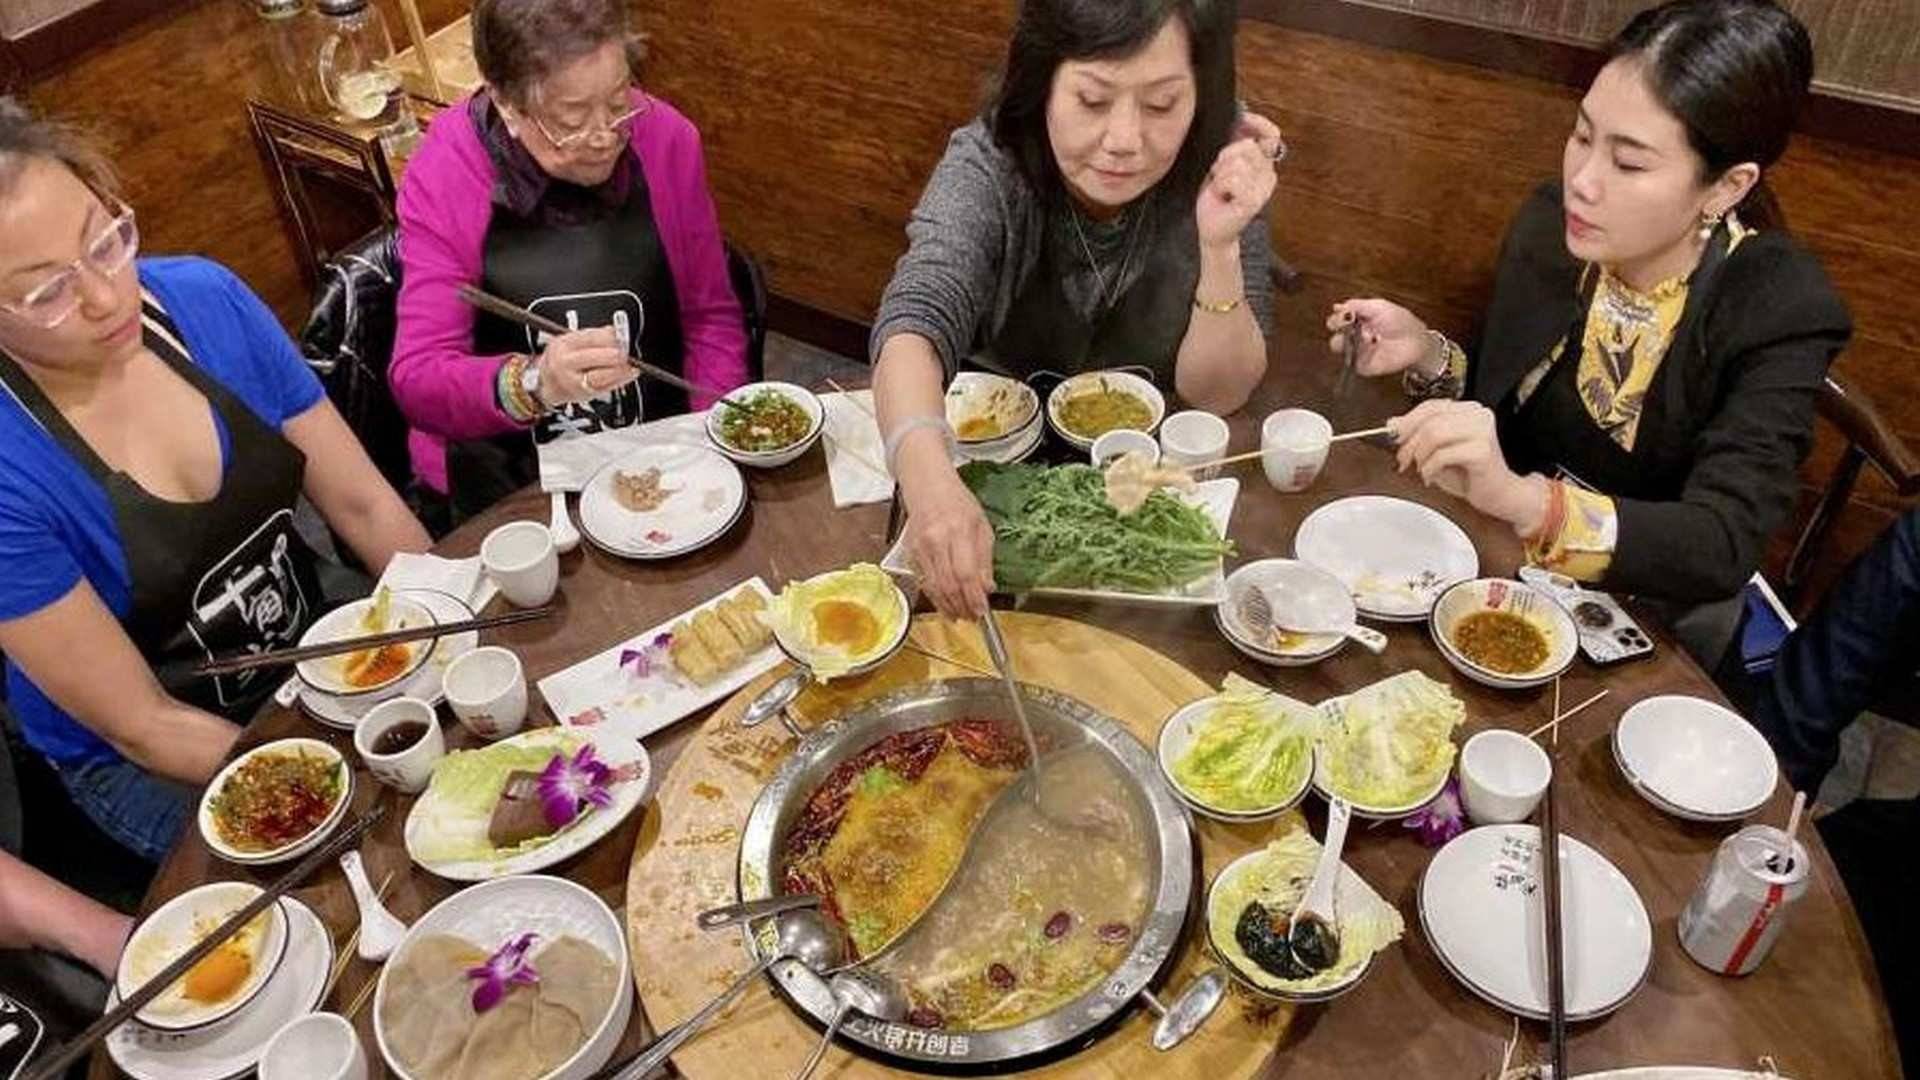 La Olla Imperial China (Hot pot) reúne a toda la familia alrededor de la mesa